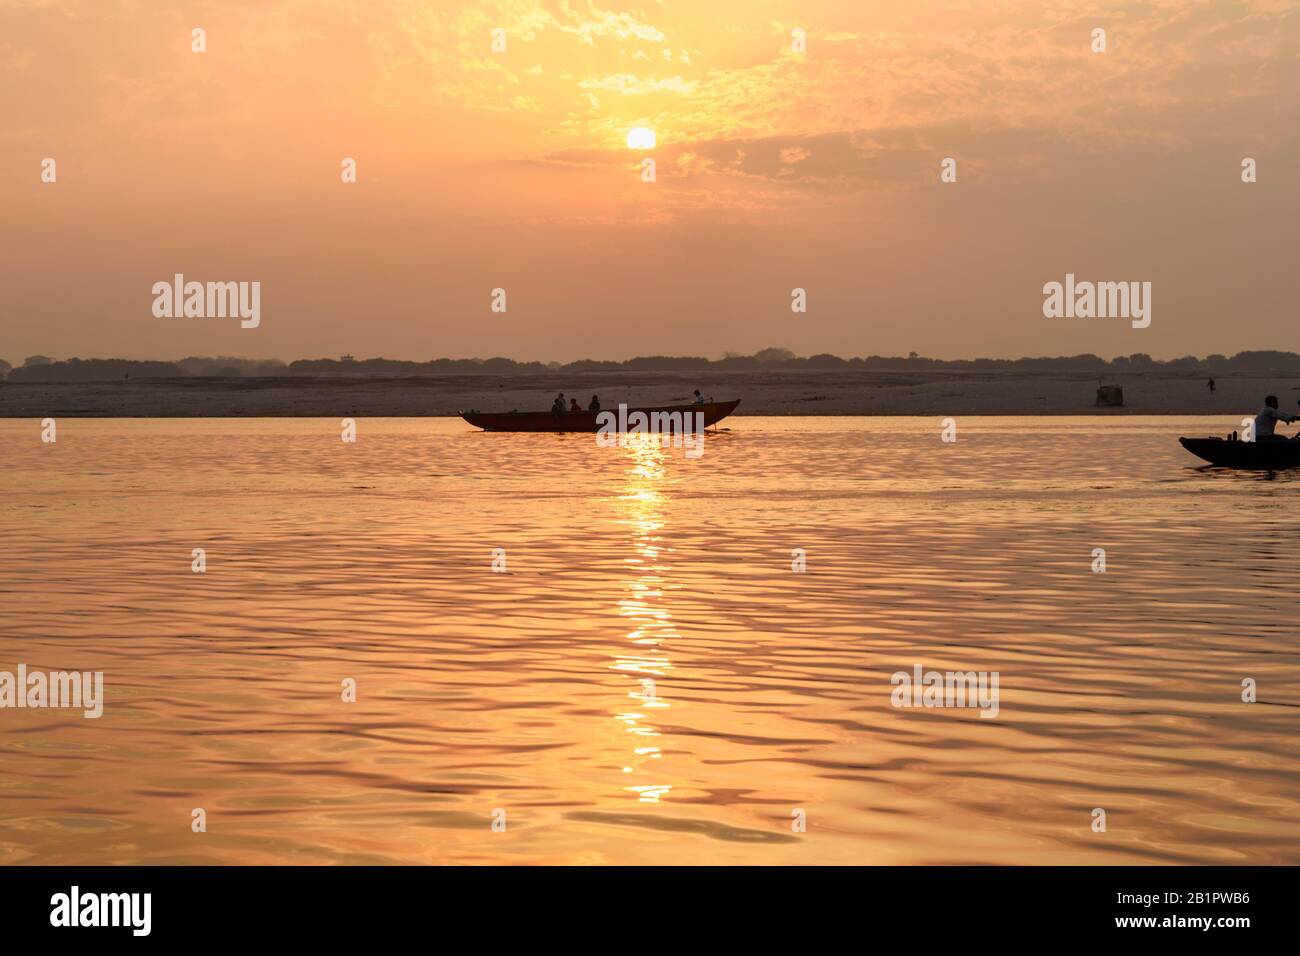 Bateaux sur la rivière Ganga au lever du soleil. Varanasi. Inde Banque D'Images